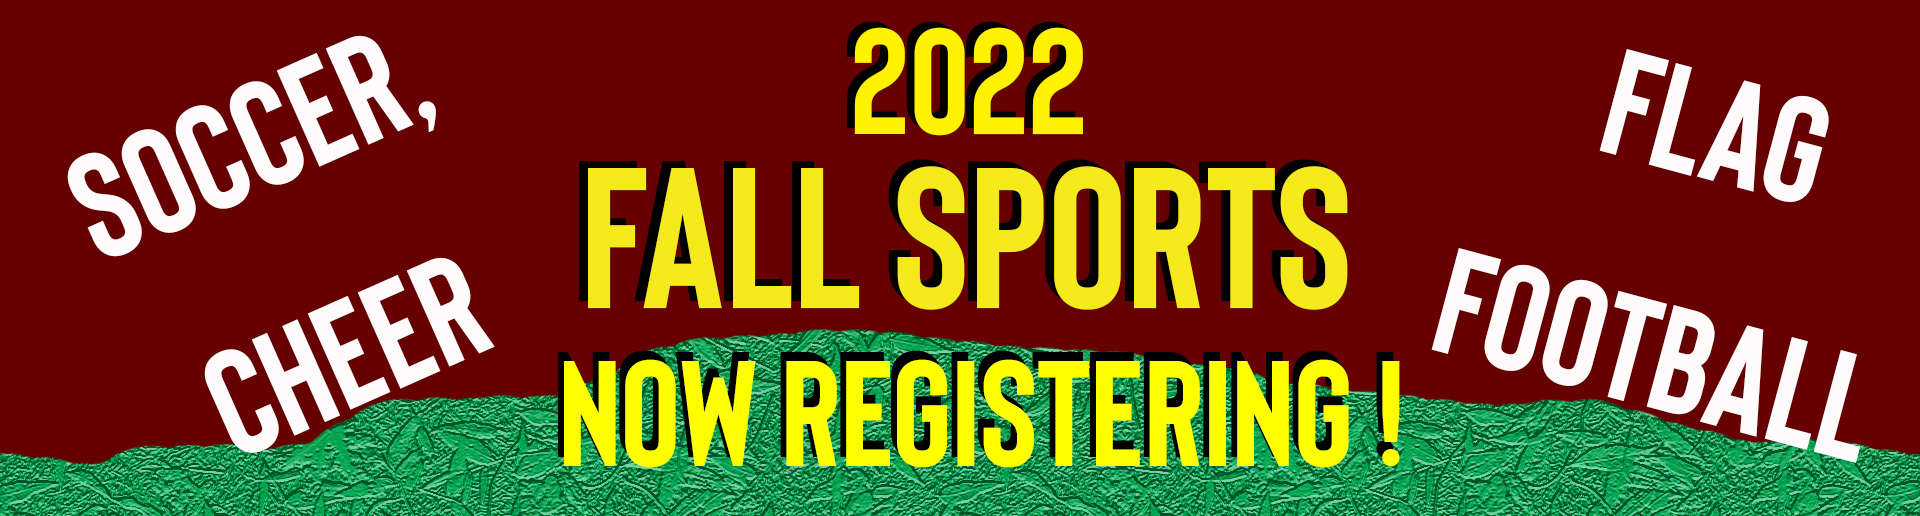 Fall Sports Registration